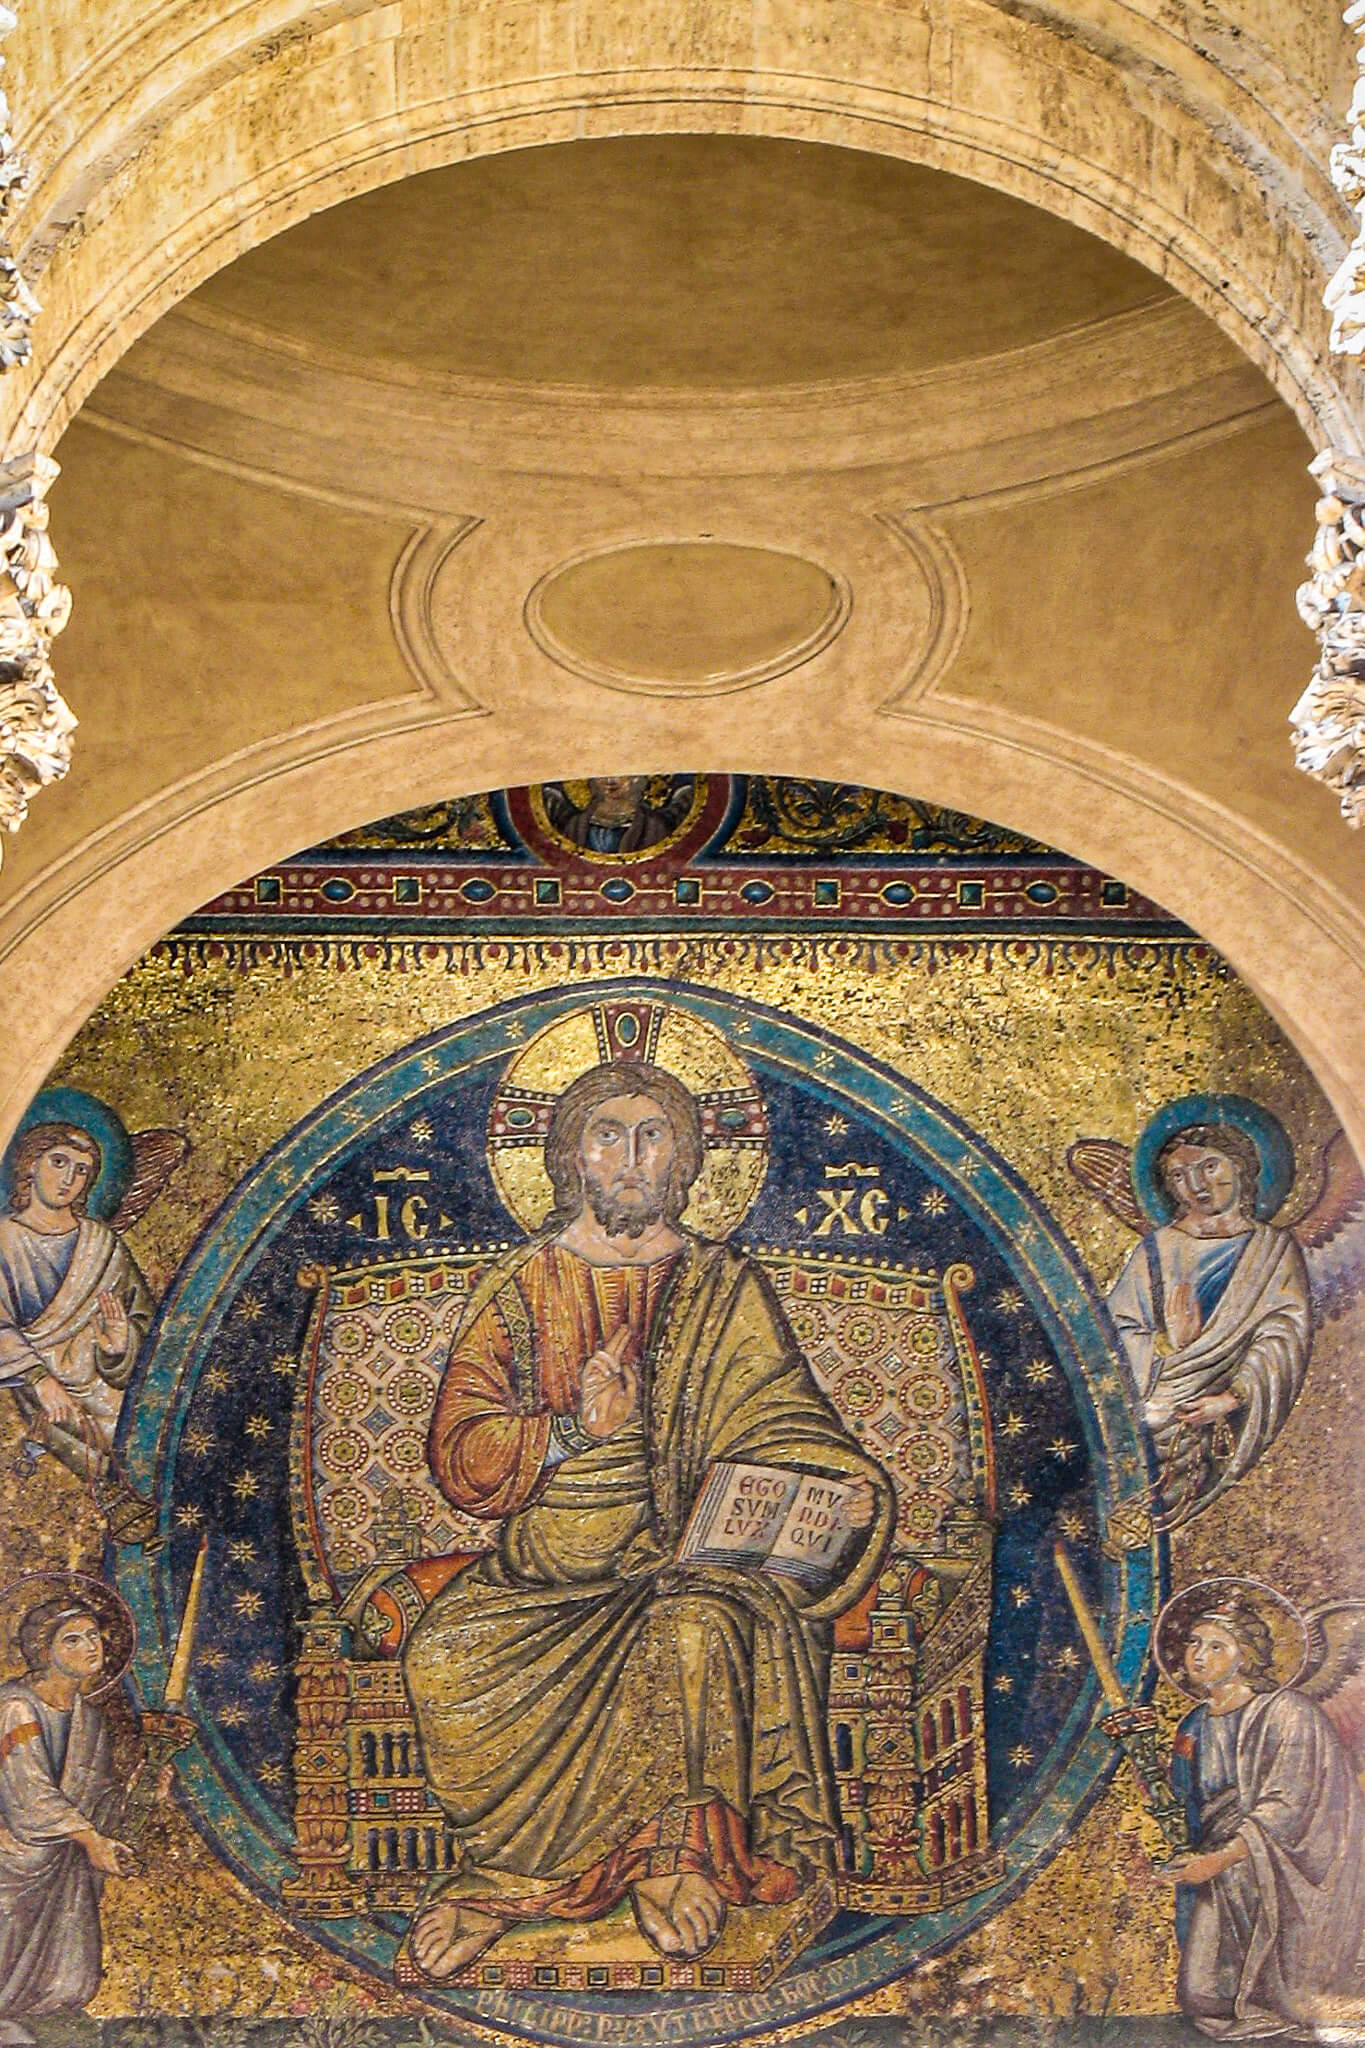 12th century mosaics on the facade of Santa Maria Maggiore, hidden behind the Baroque facade